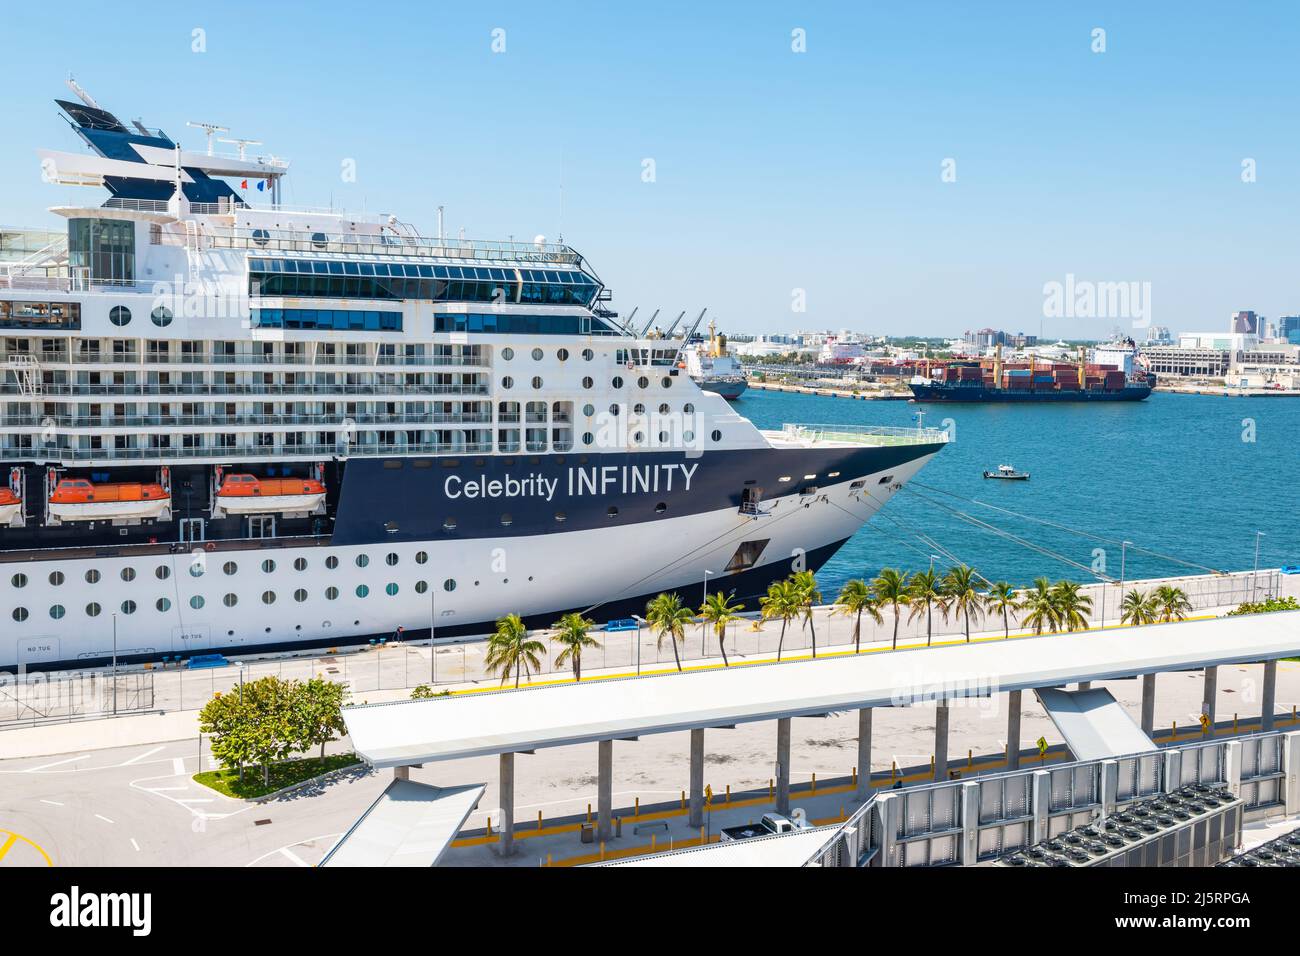 FORT LAUDERDALE, FLORIDA - 28. MÄRZ 2022: Das Kreuzschiff Celebrity Infinity (Celebrity Cruises) dockte im Hafen Everglades, Ft Lauderdale, Florida an. Stockfoto